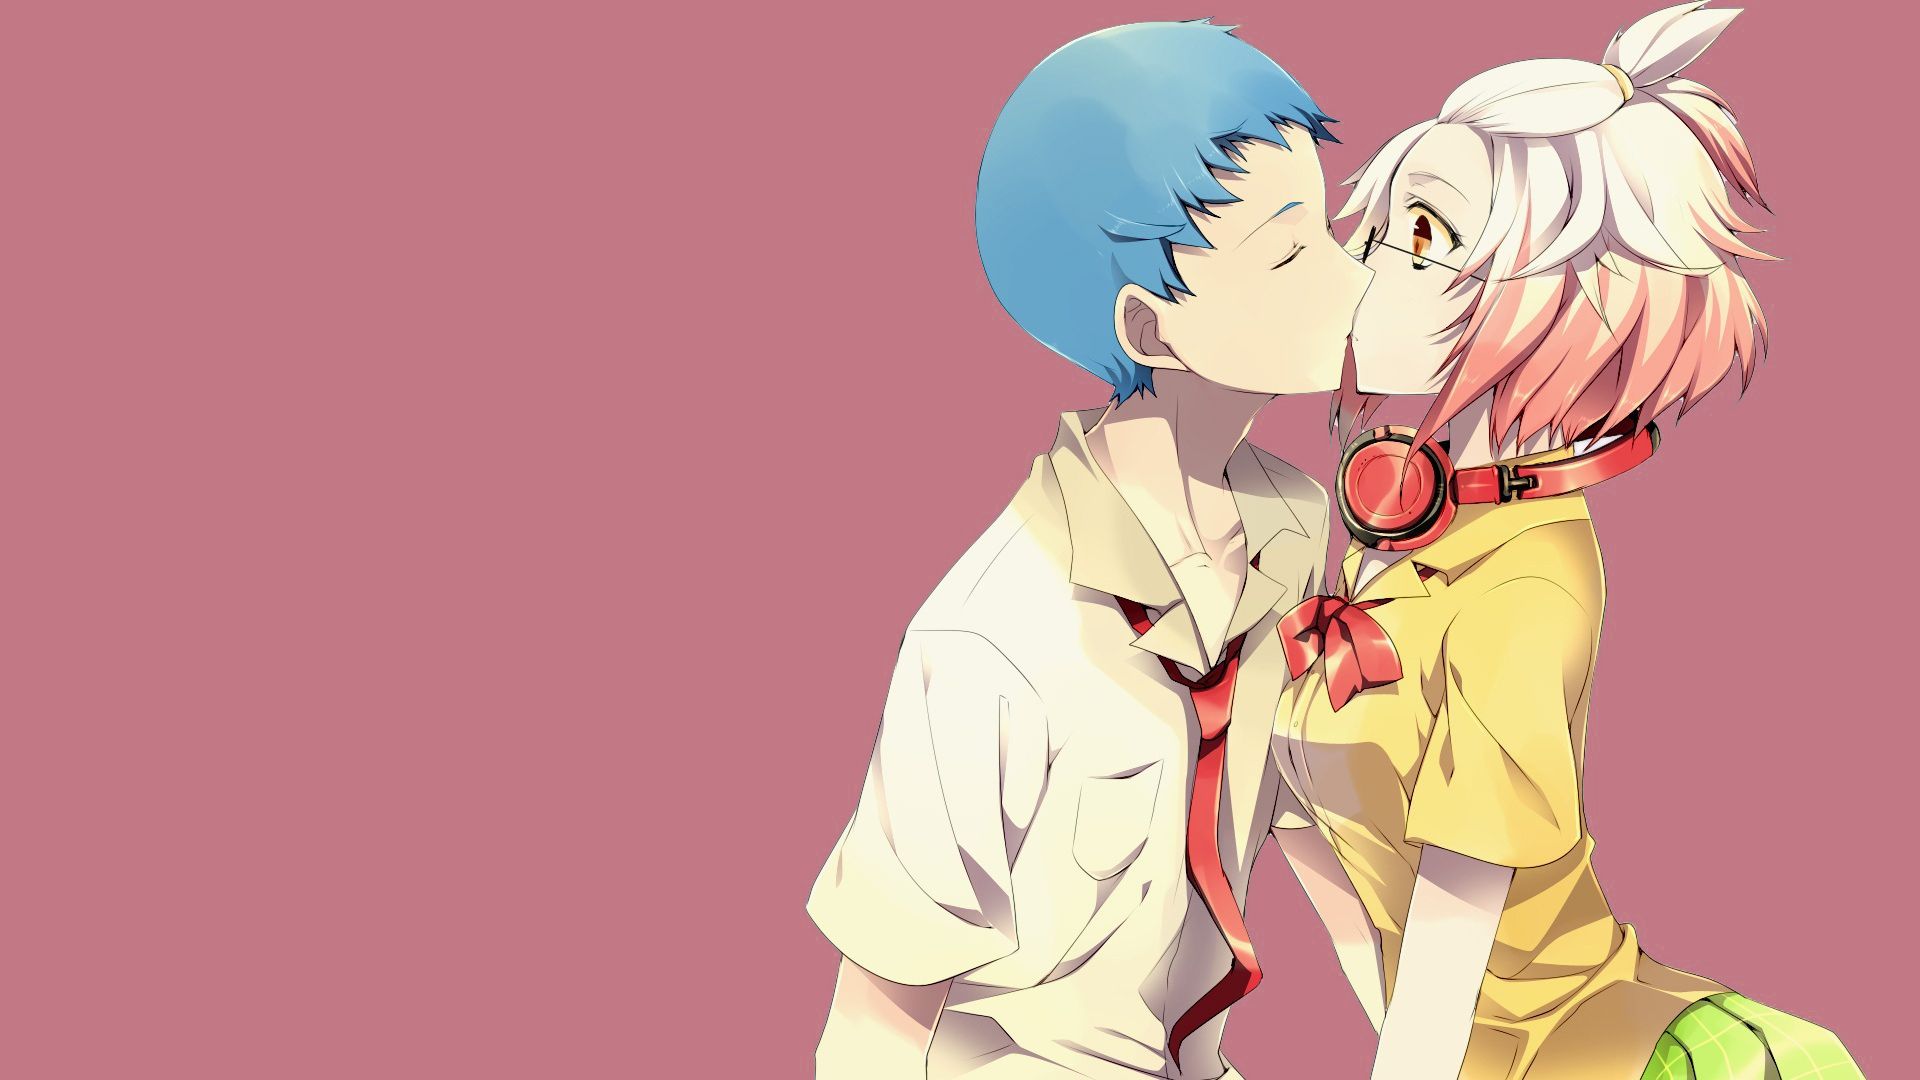 Kiss anime couple and hug anime 2036653 on animeshercom